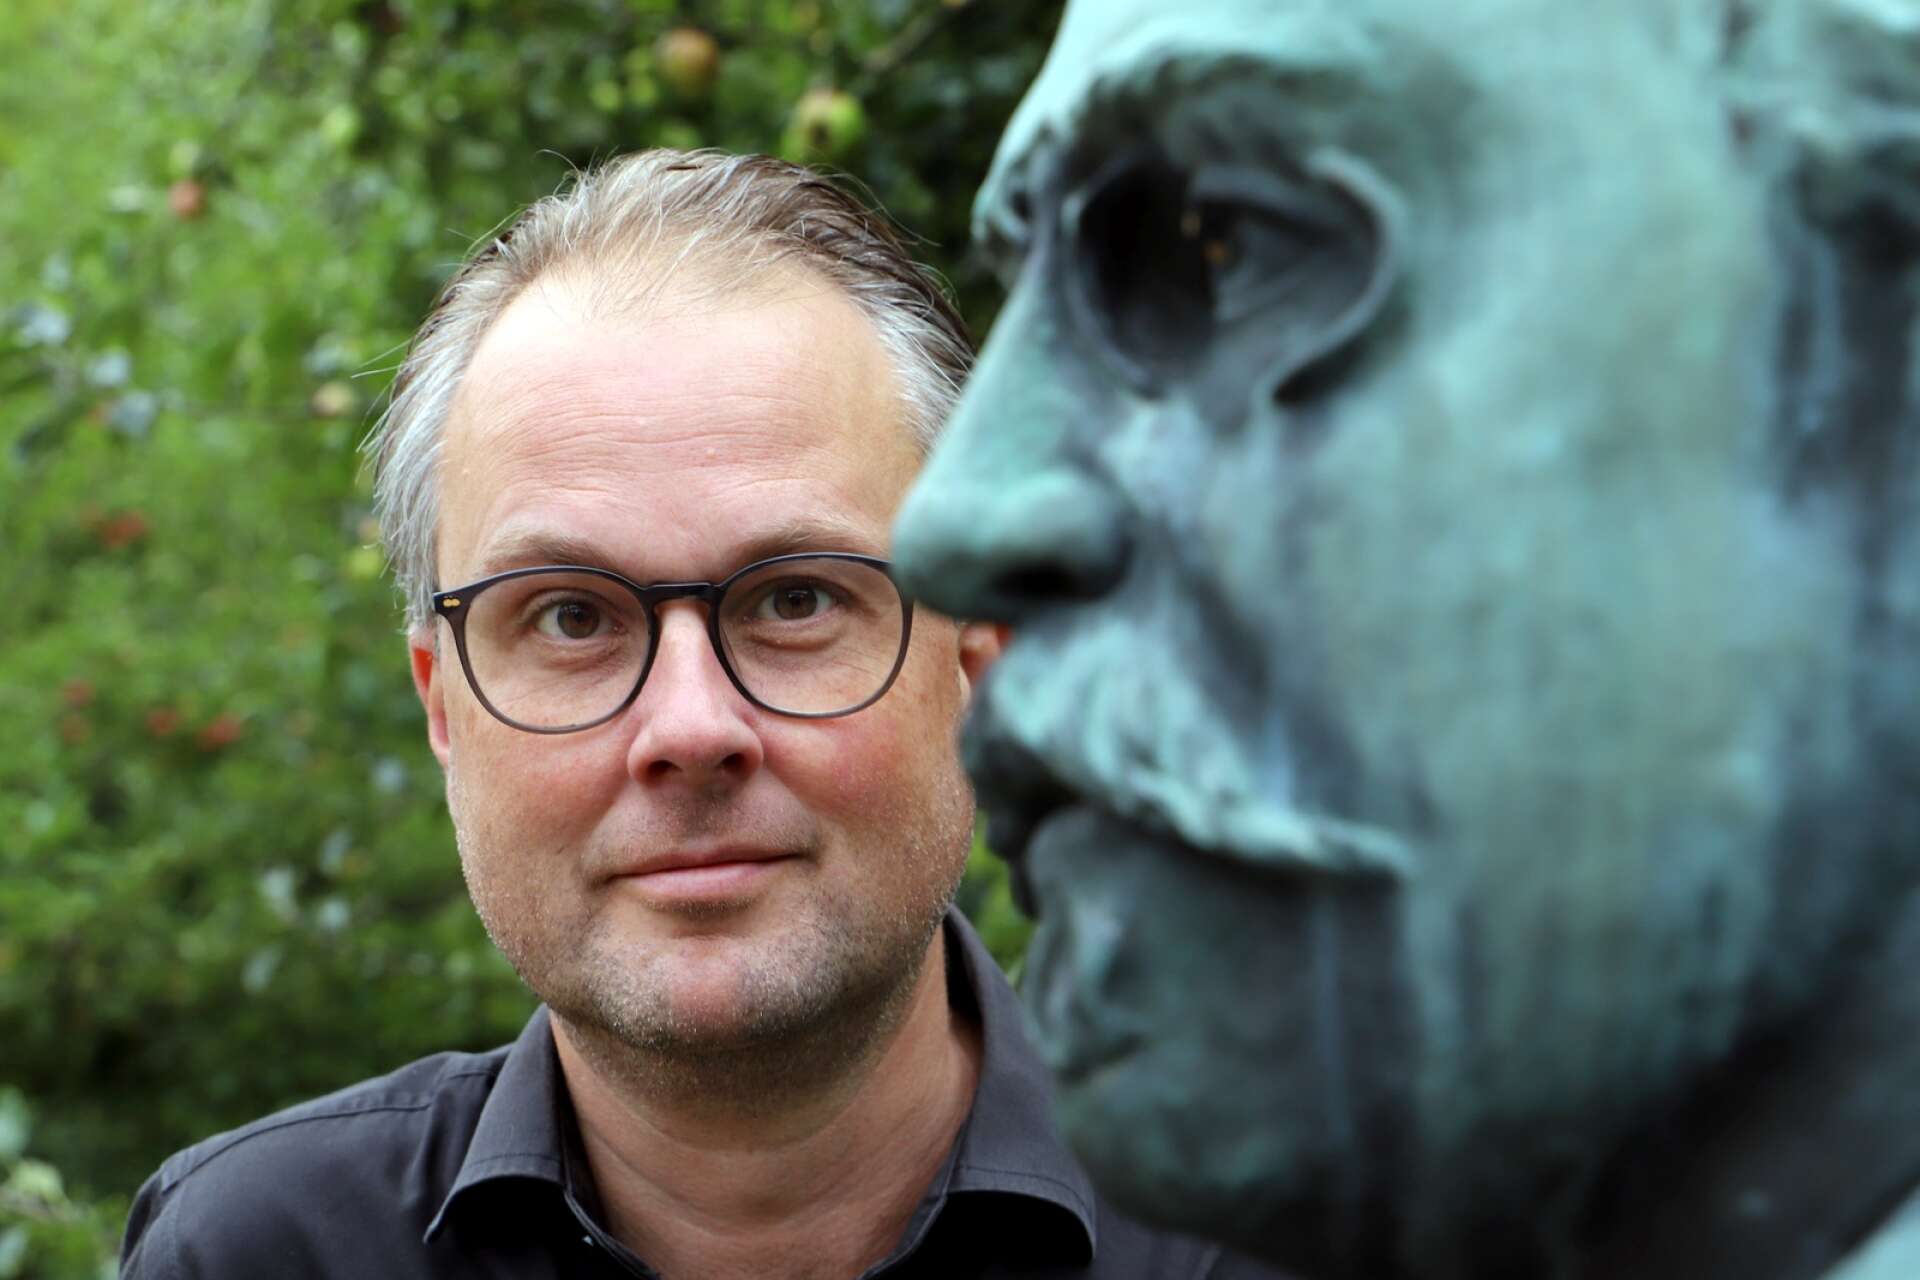 Fredrik Höglund, Frödingkännare och vice ordförande i Frödingsällskapet.